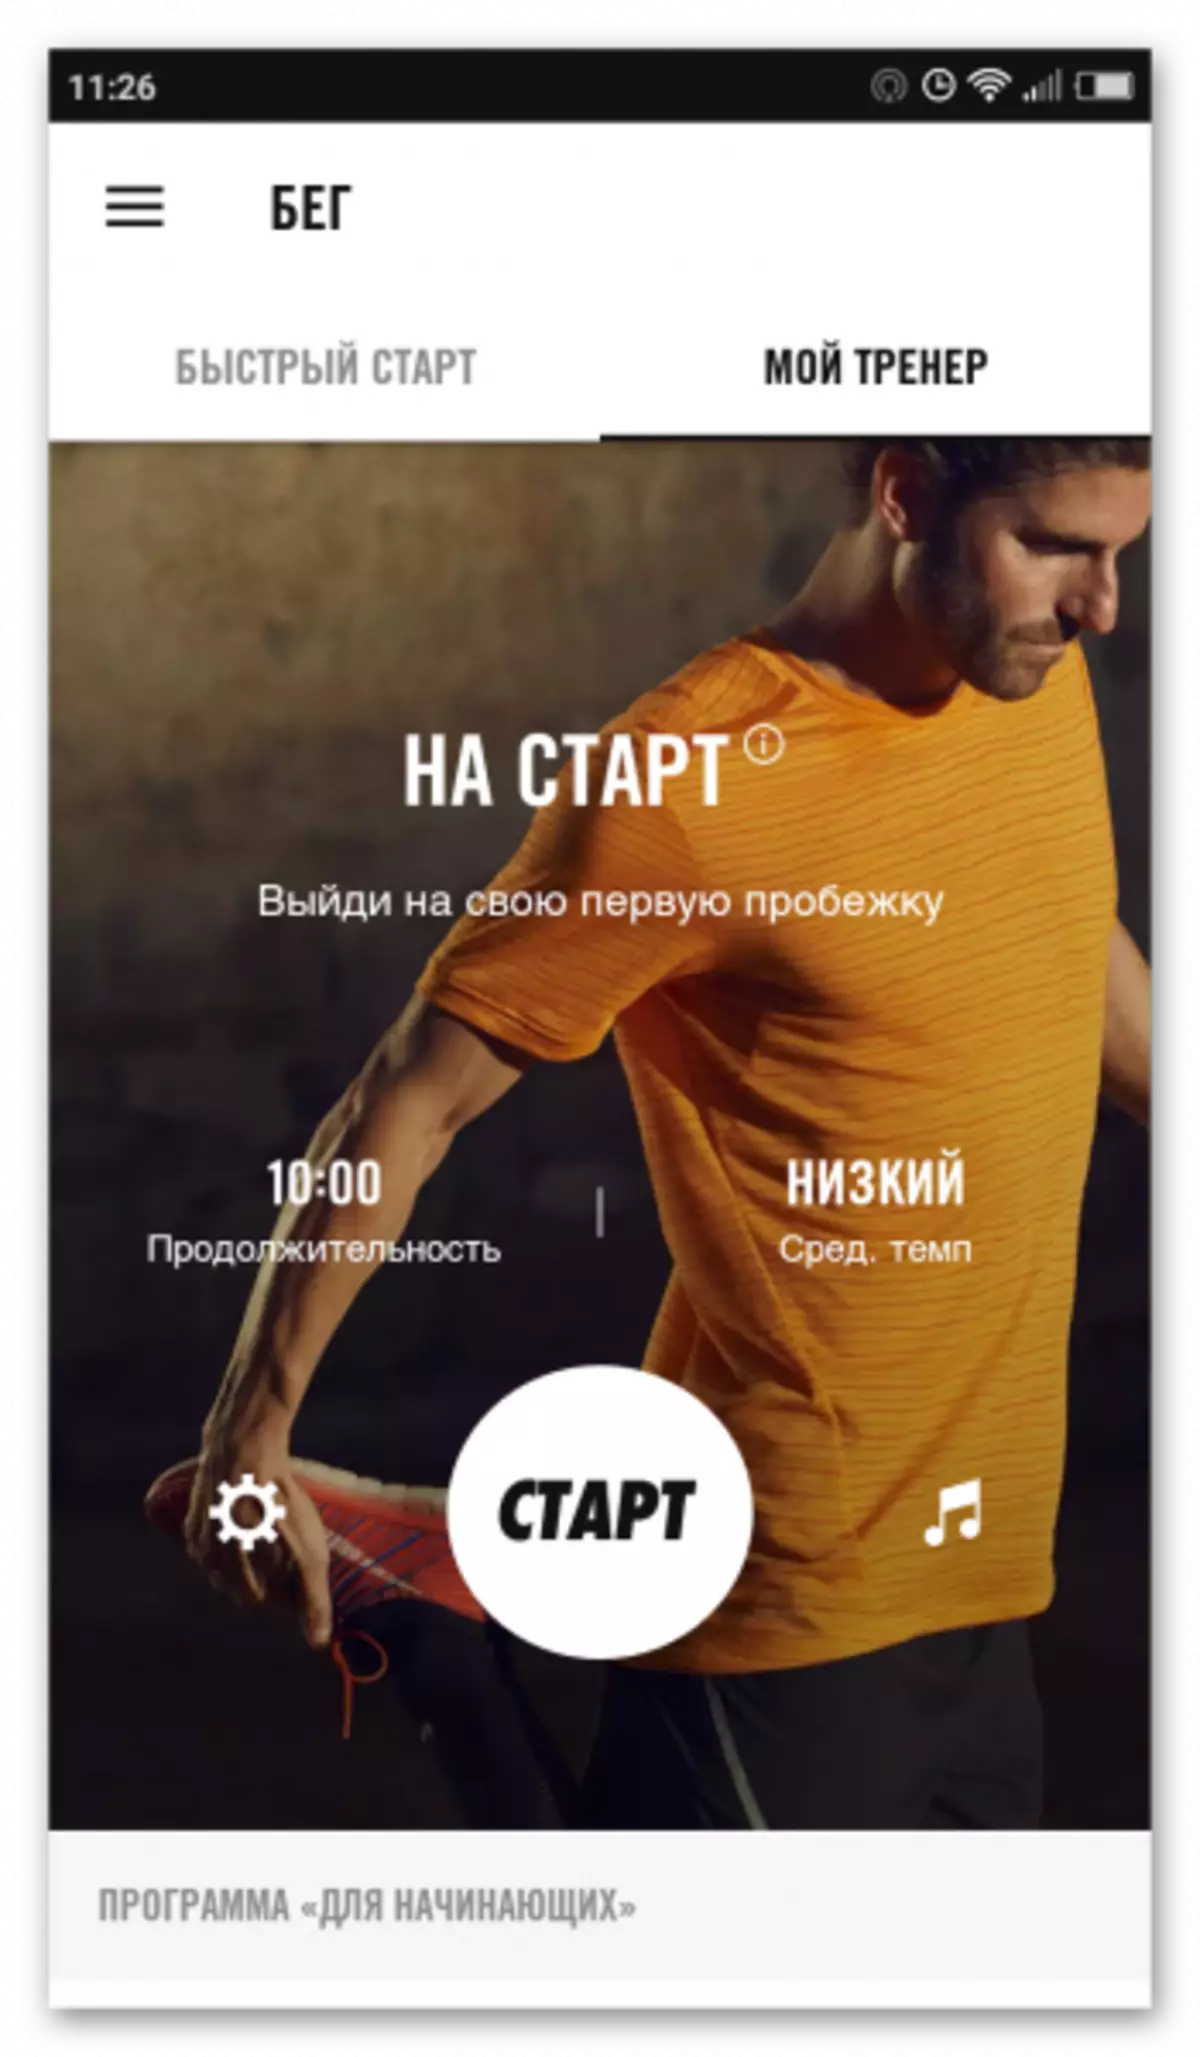 Câu lạc bộ Nike + Run trên Android